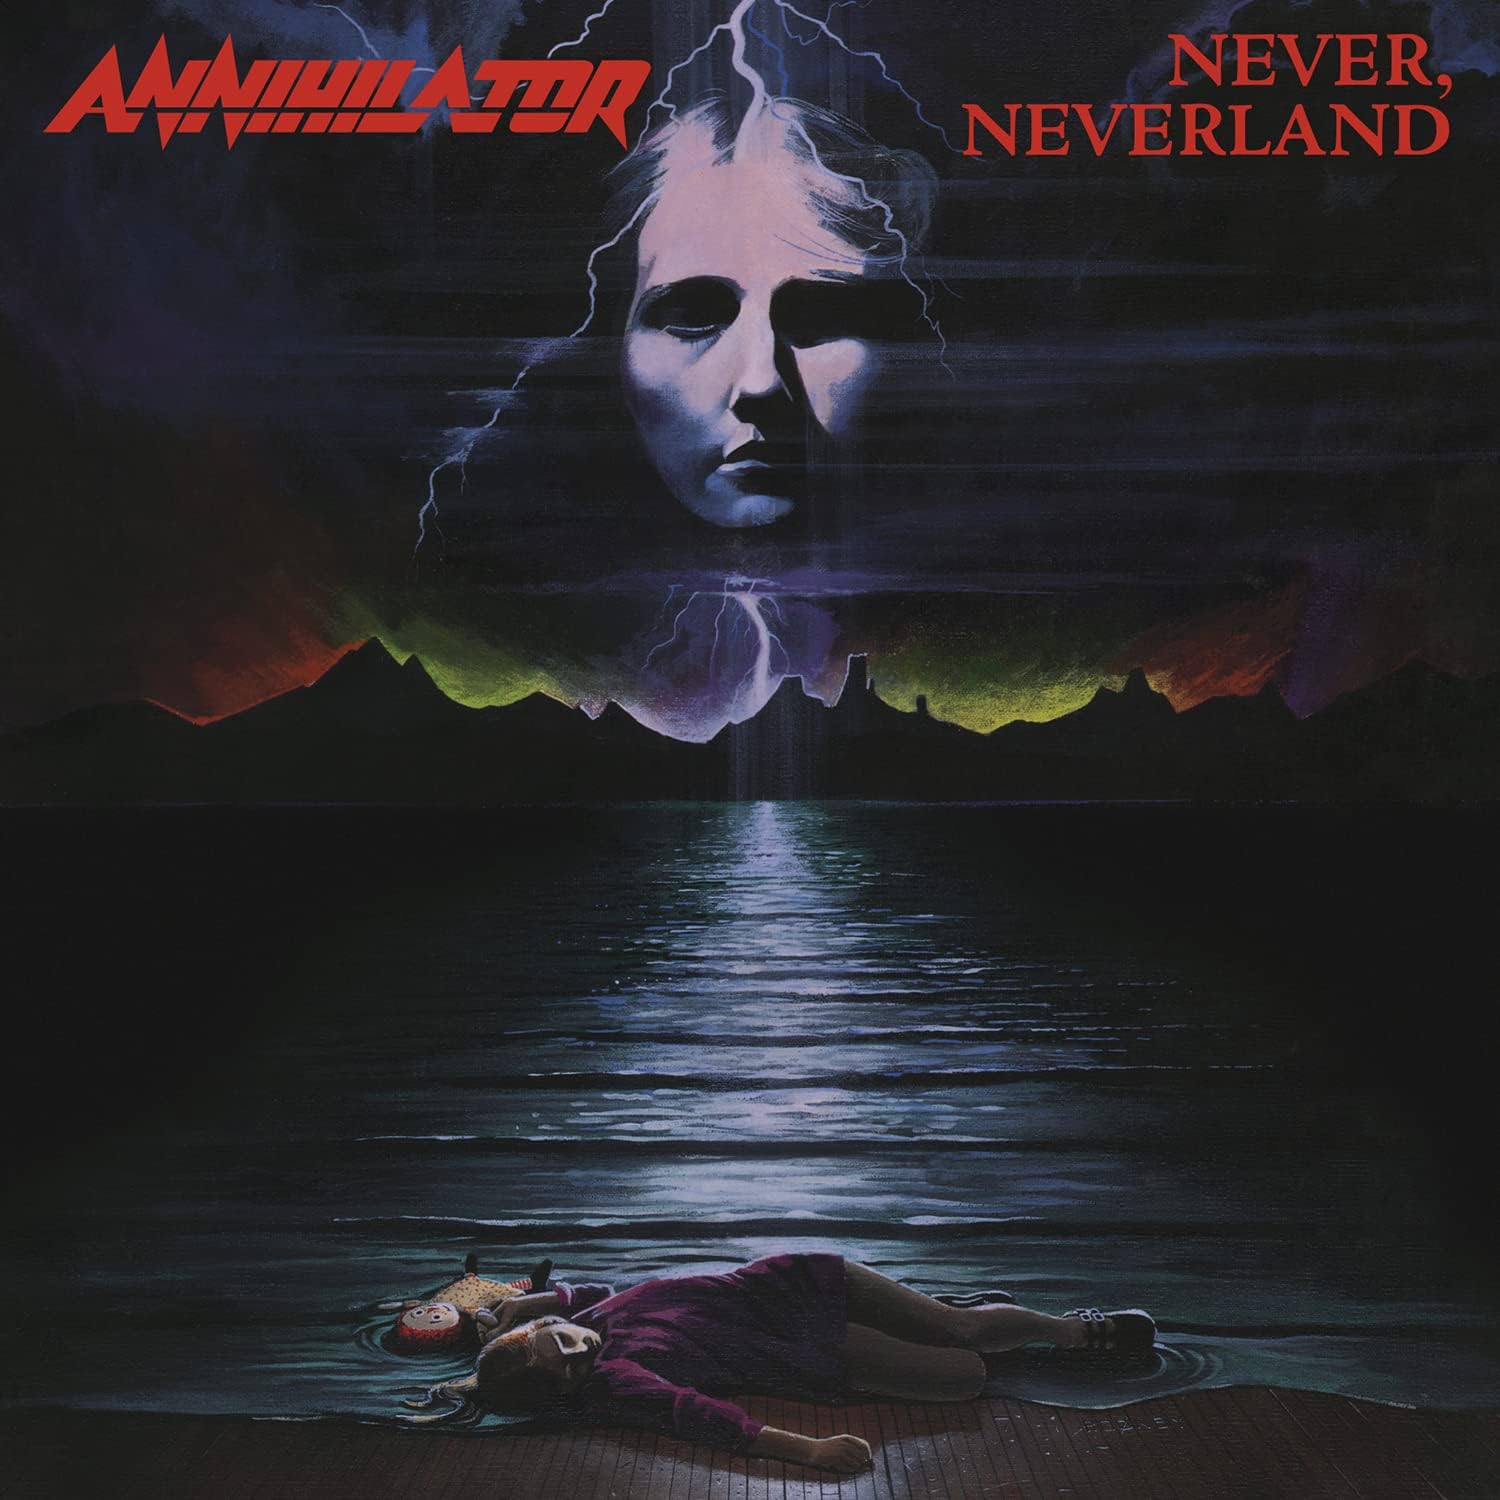 Annihilator "Never Neverland" Black Vinyl